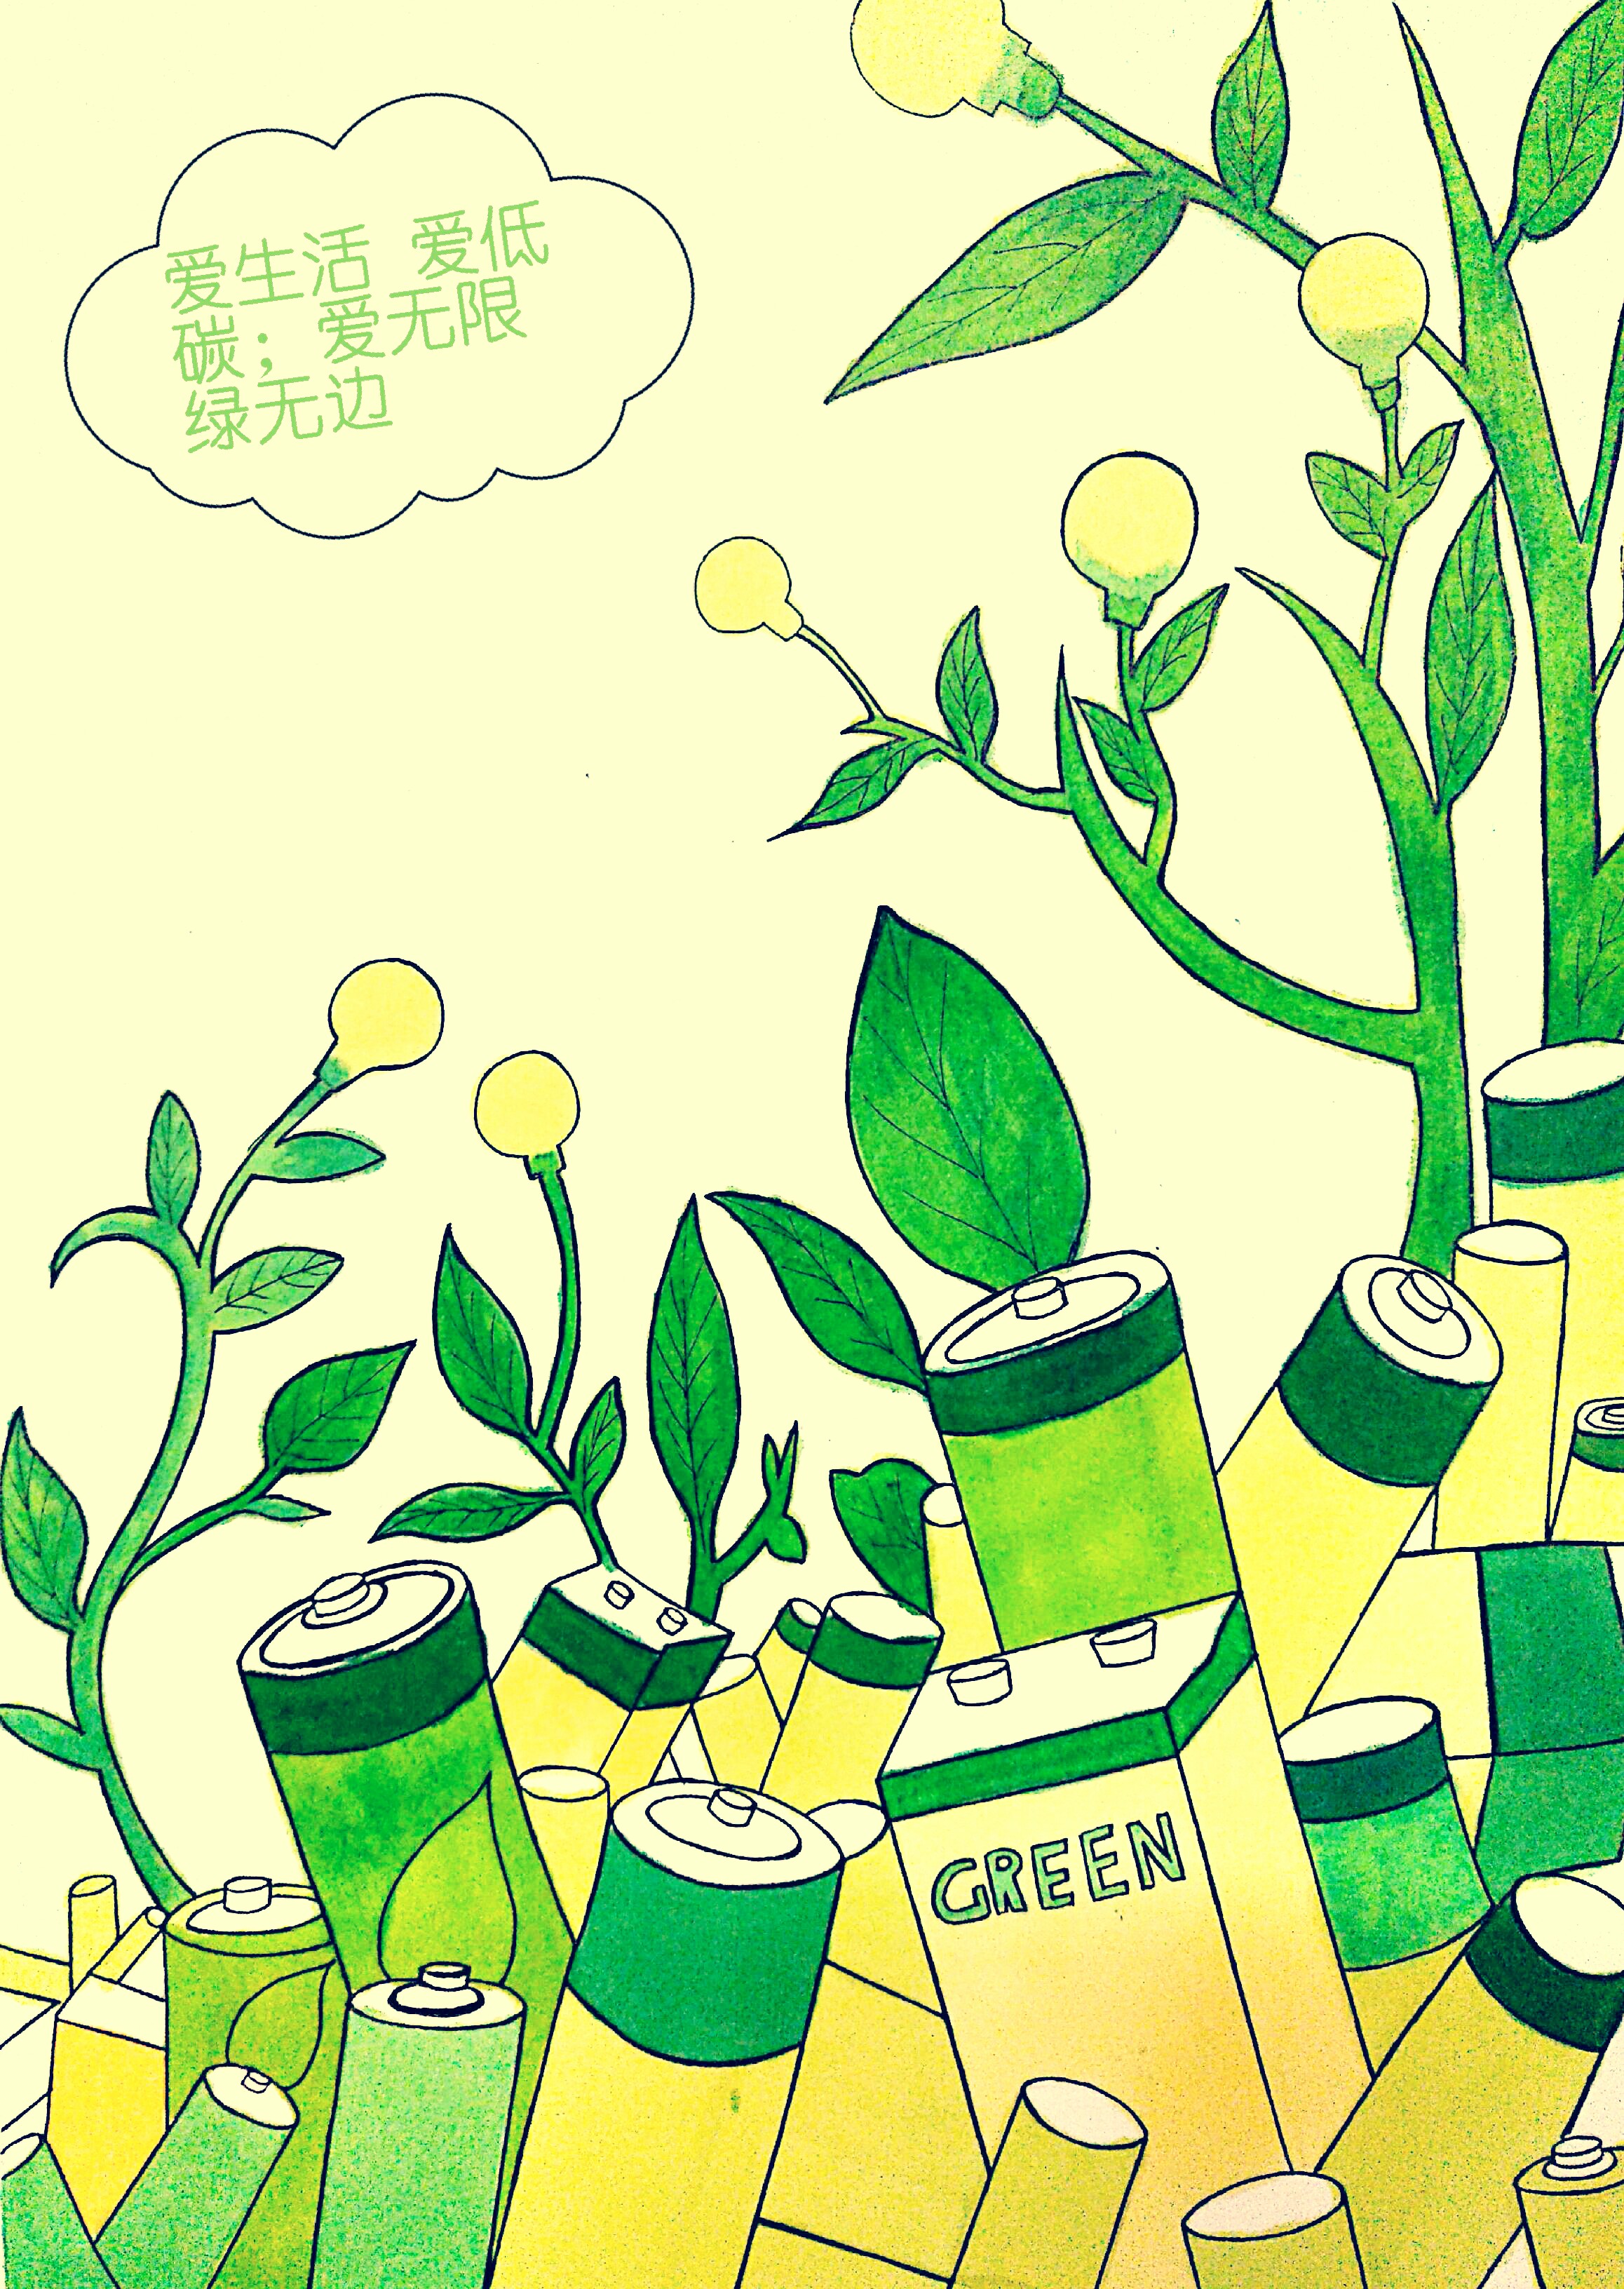 绿色环保标志绘画图片